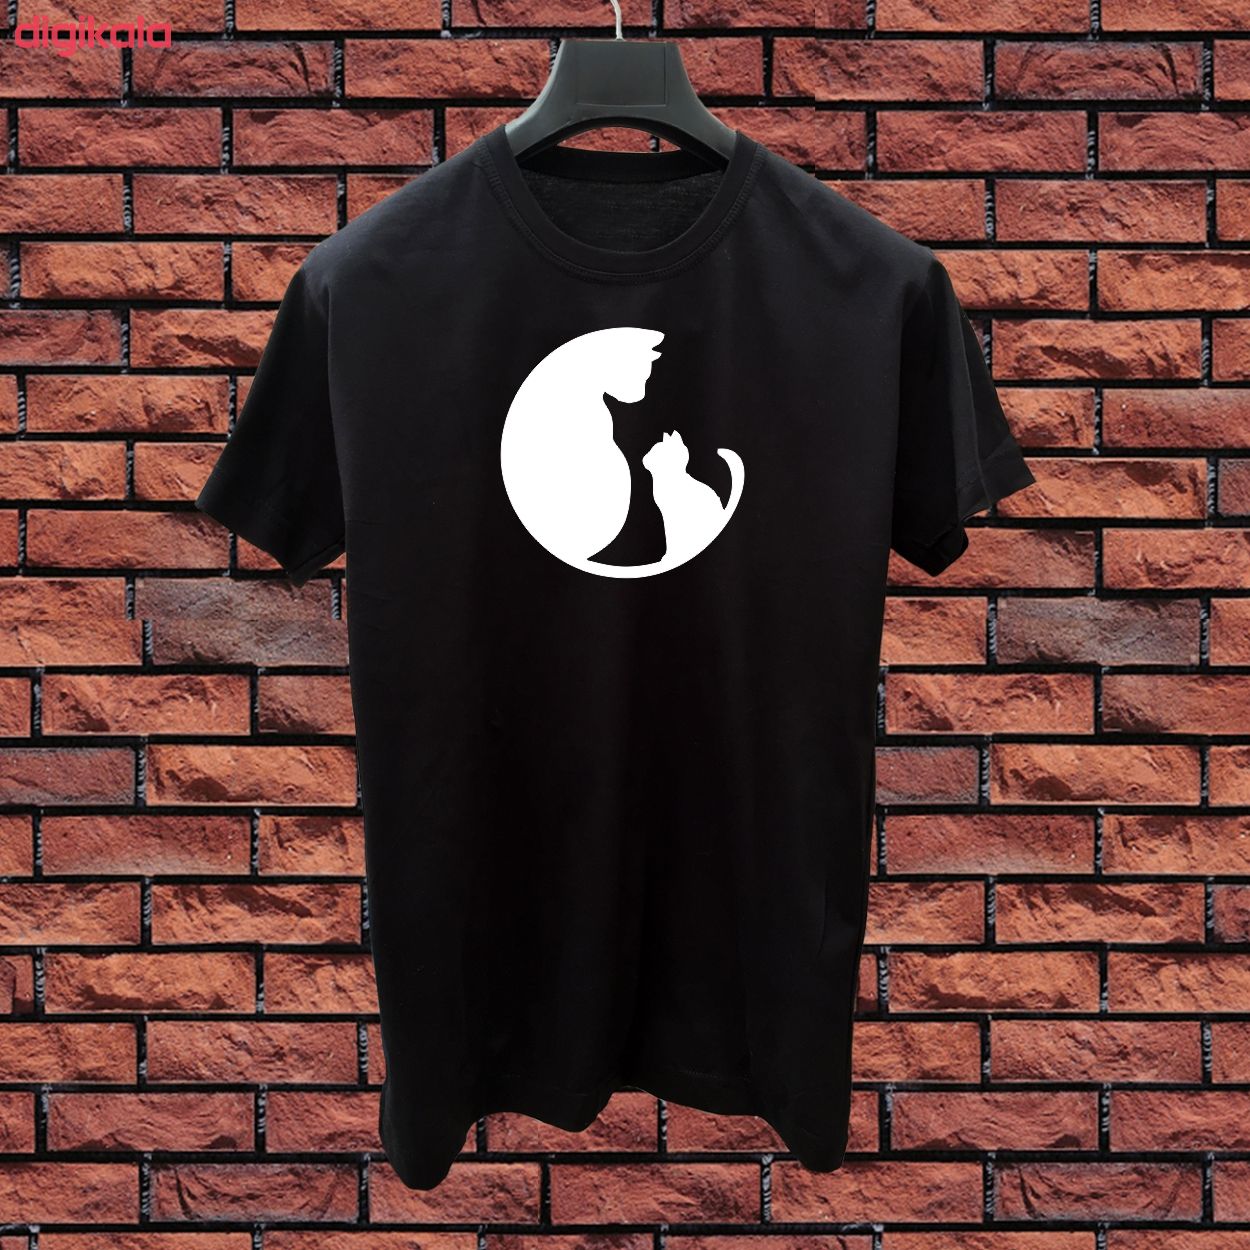 تی شرت مردانهطرح بچه گربه و مادرکدbch3